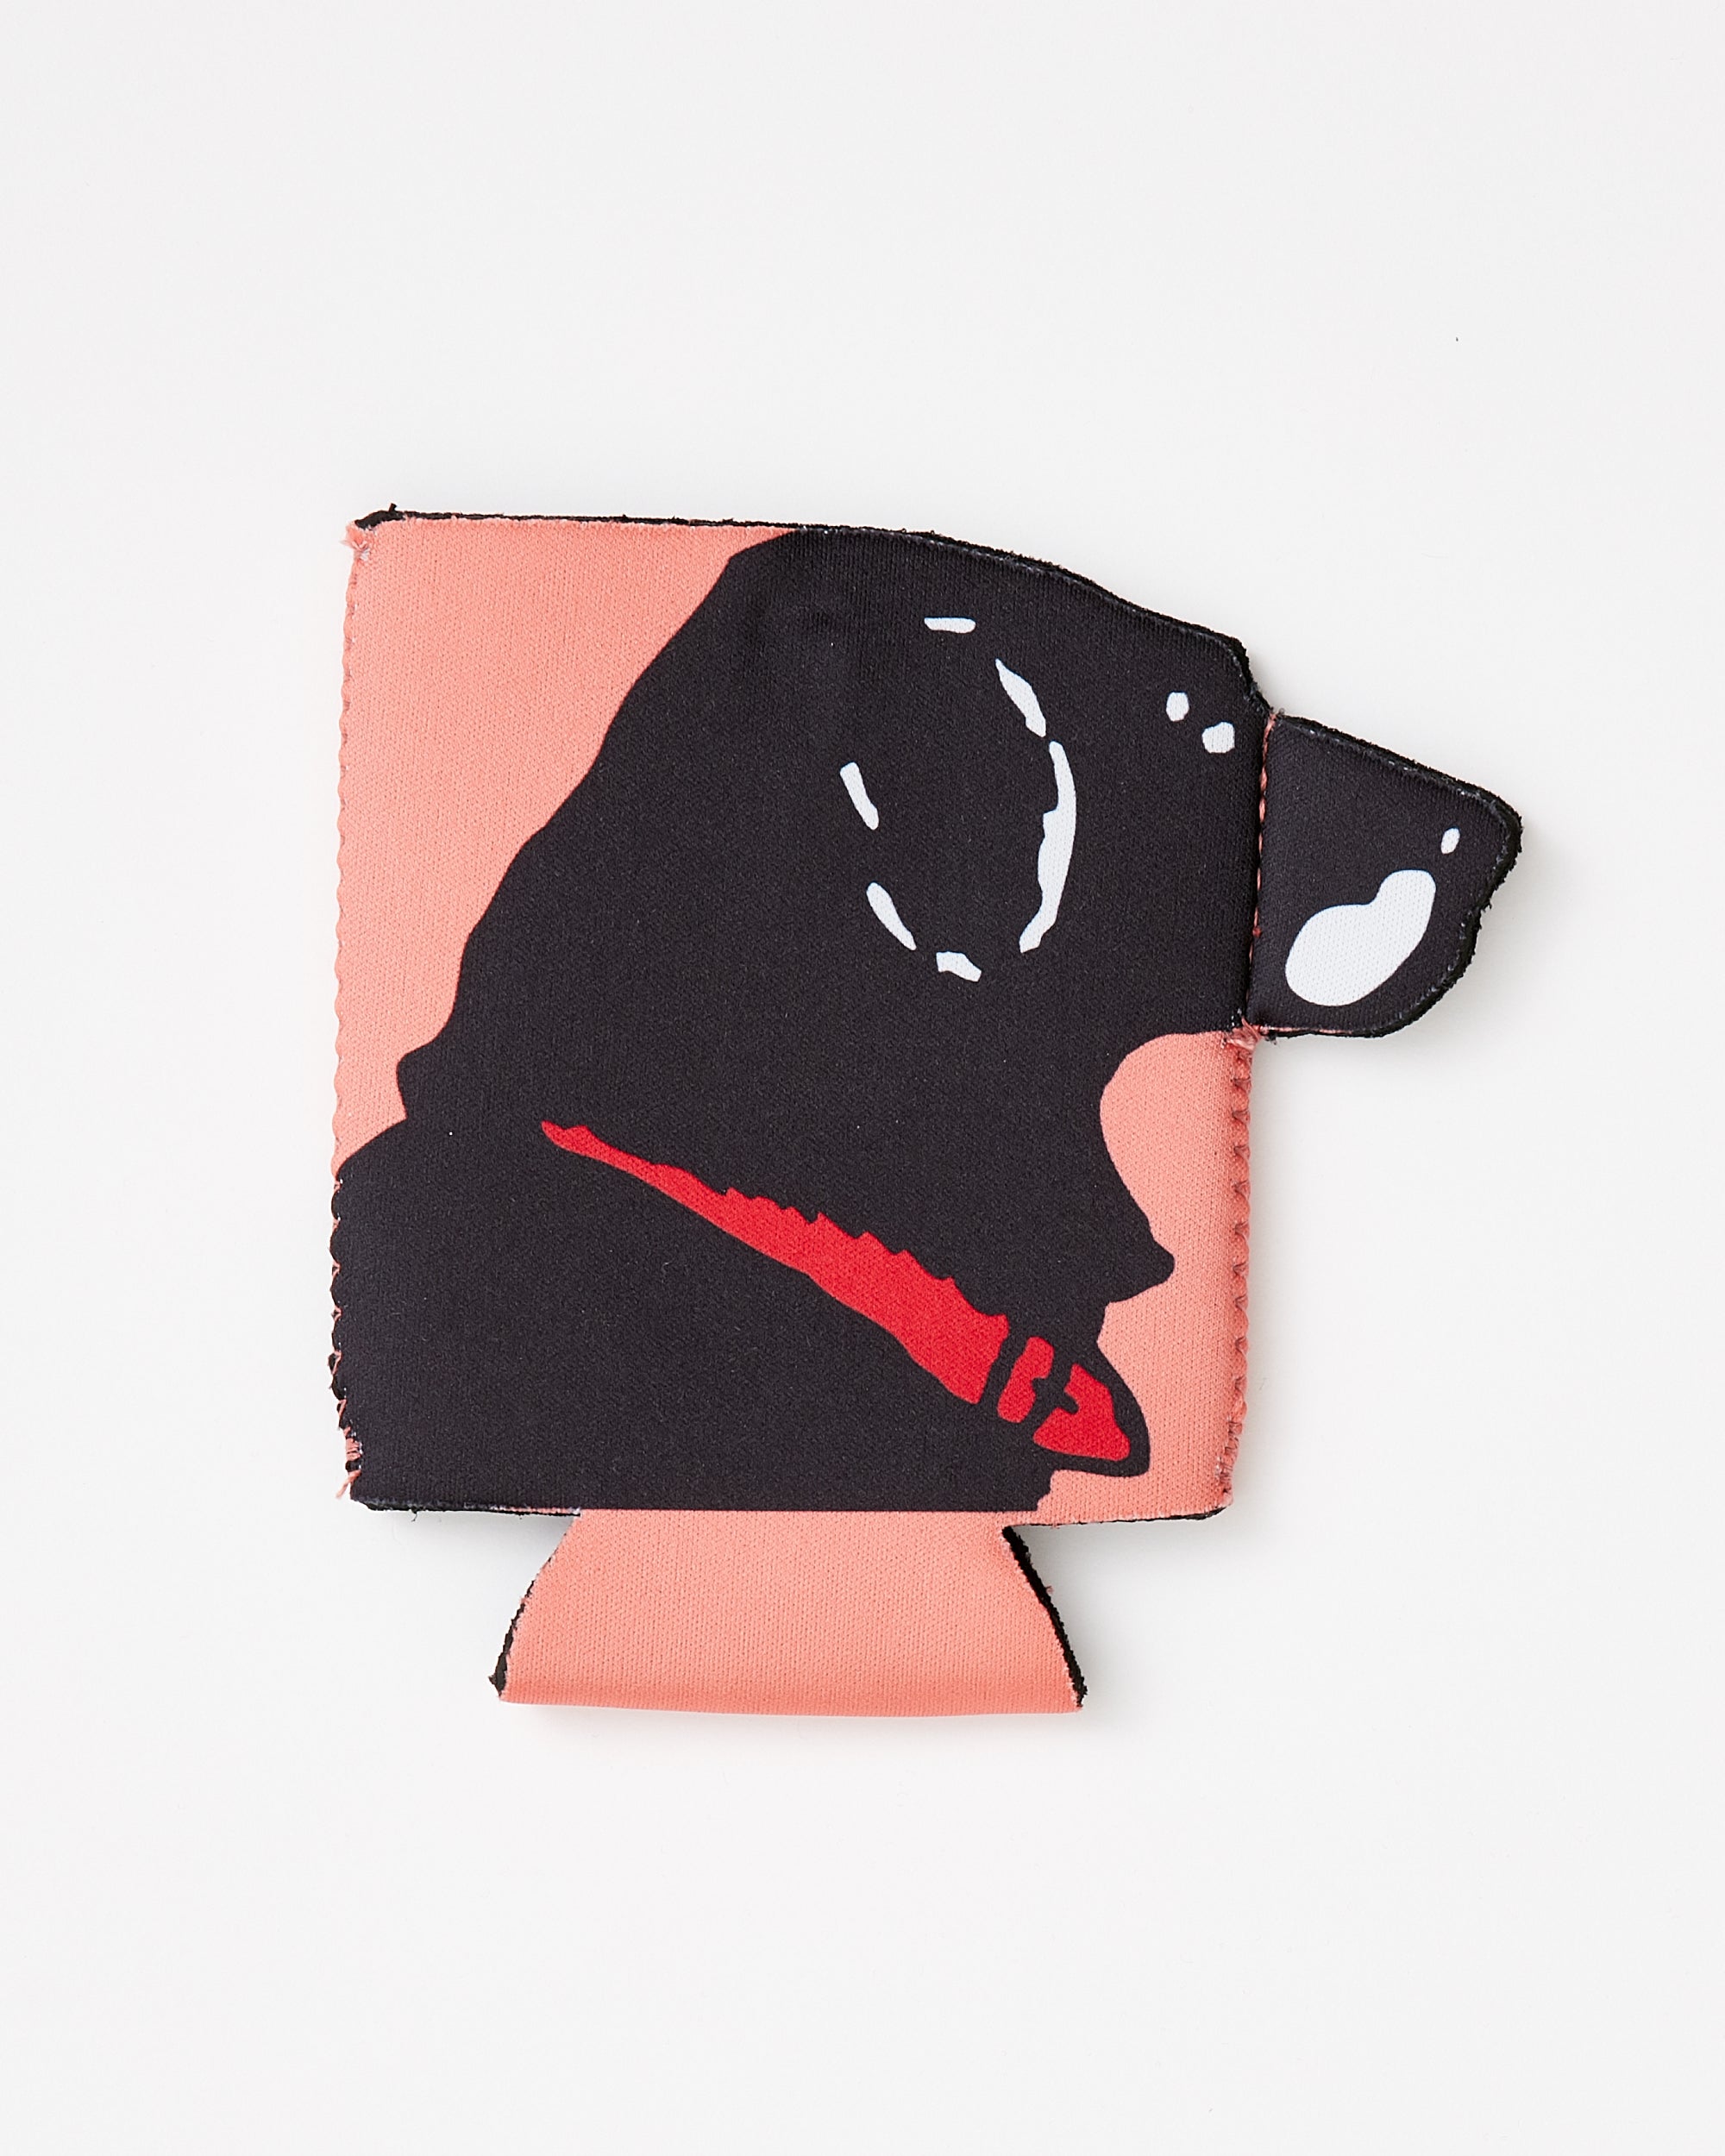 The Black Dog Bags & Handbags for Women | eBay